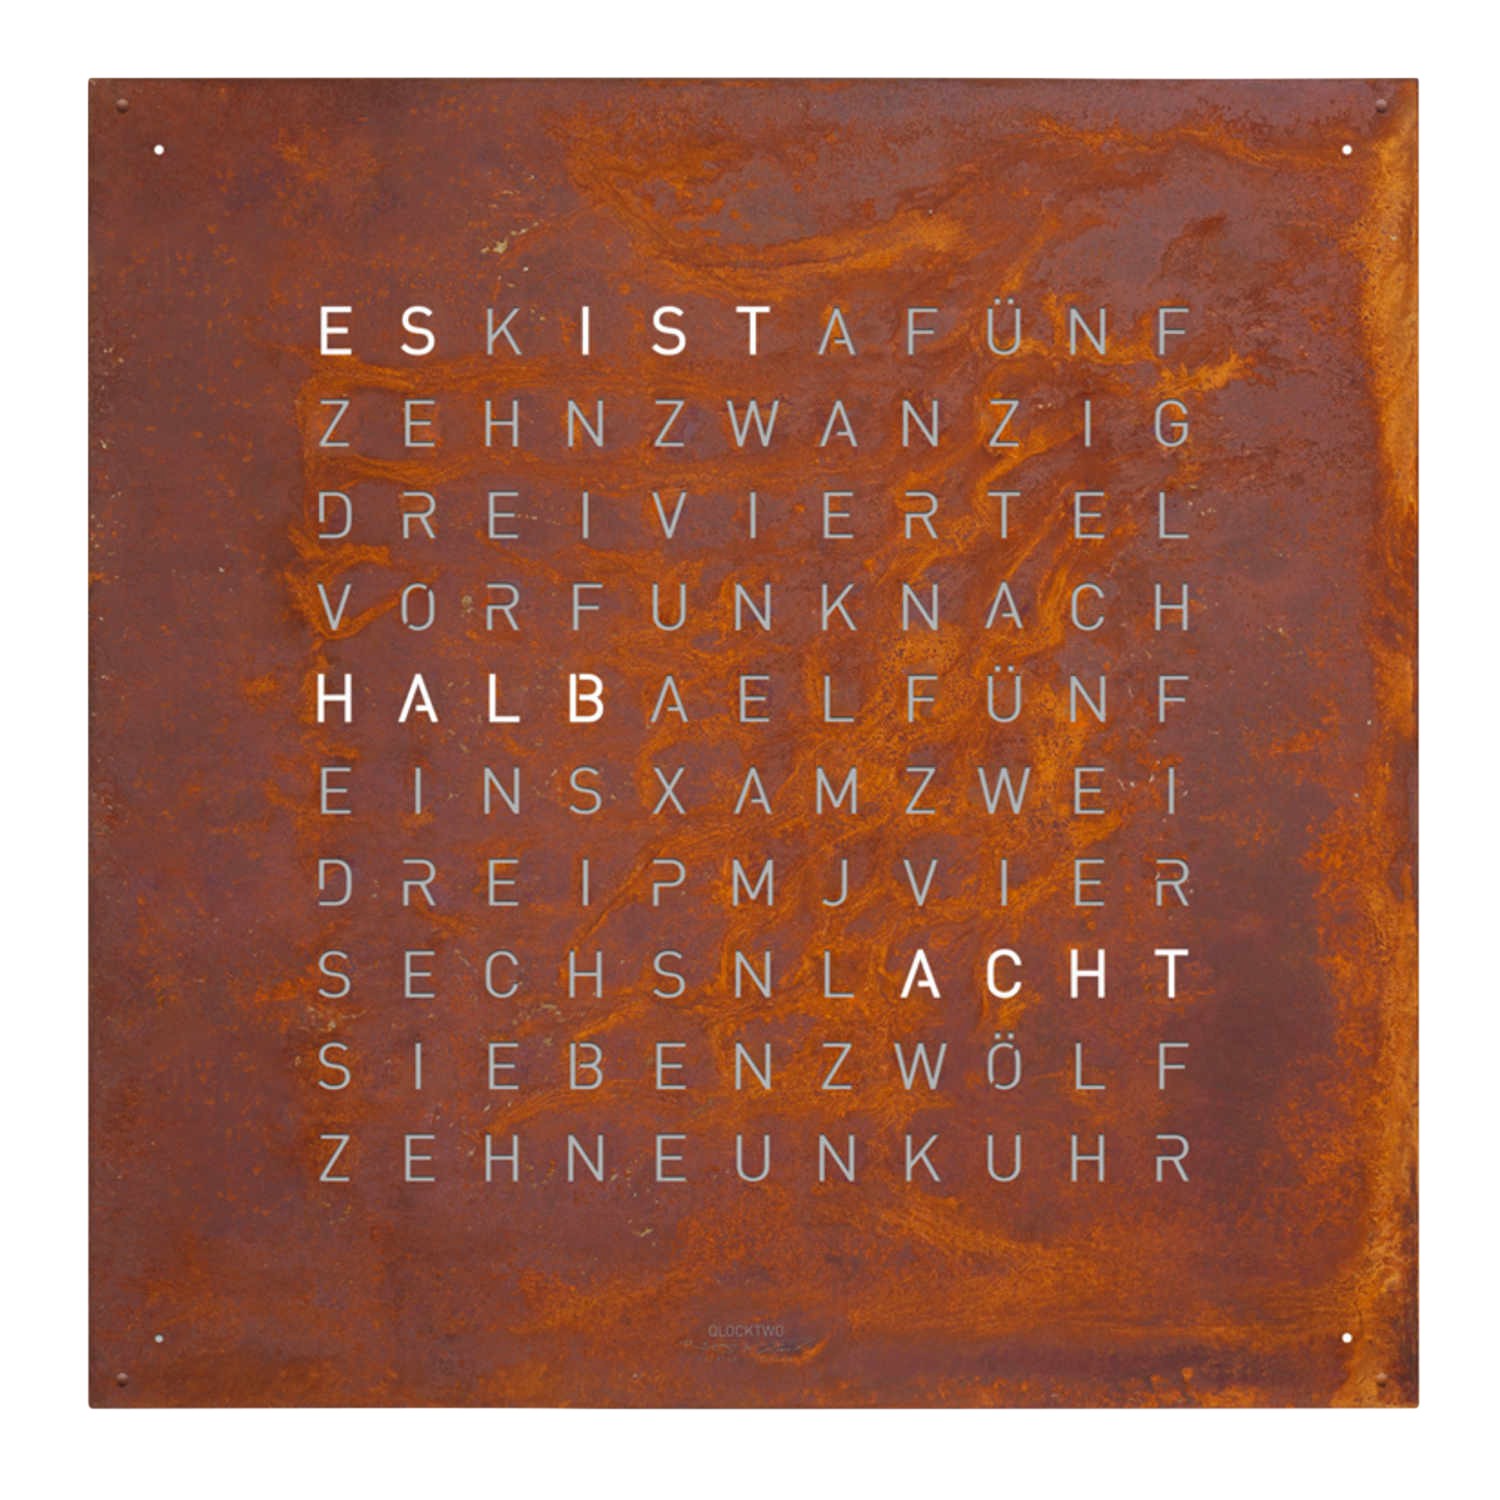 QLOCKTWO EARTH 180 Creator's Edition Rust Wanduhr, Sprache niederländisch (nl), Korpus weiss ral 9003 von QLOCKTWO